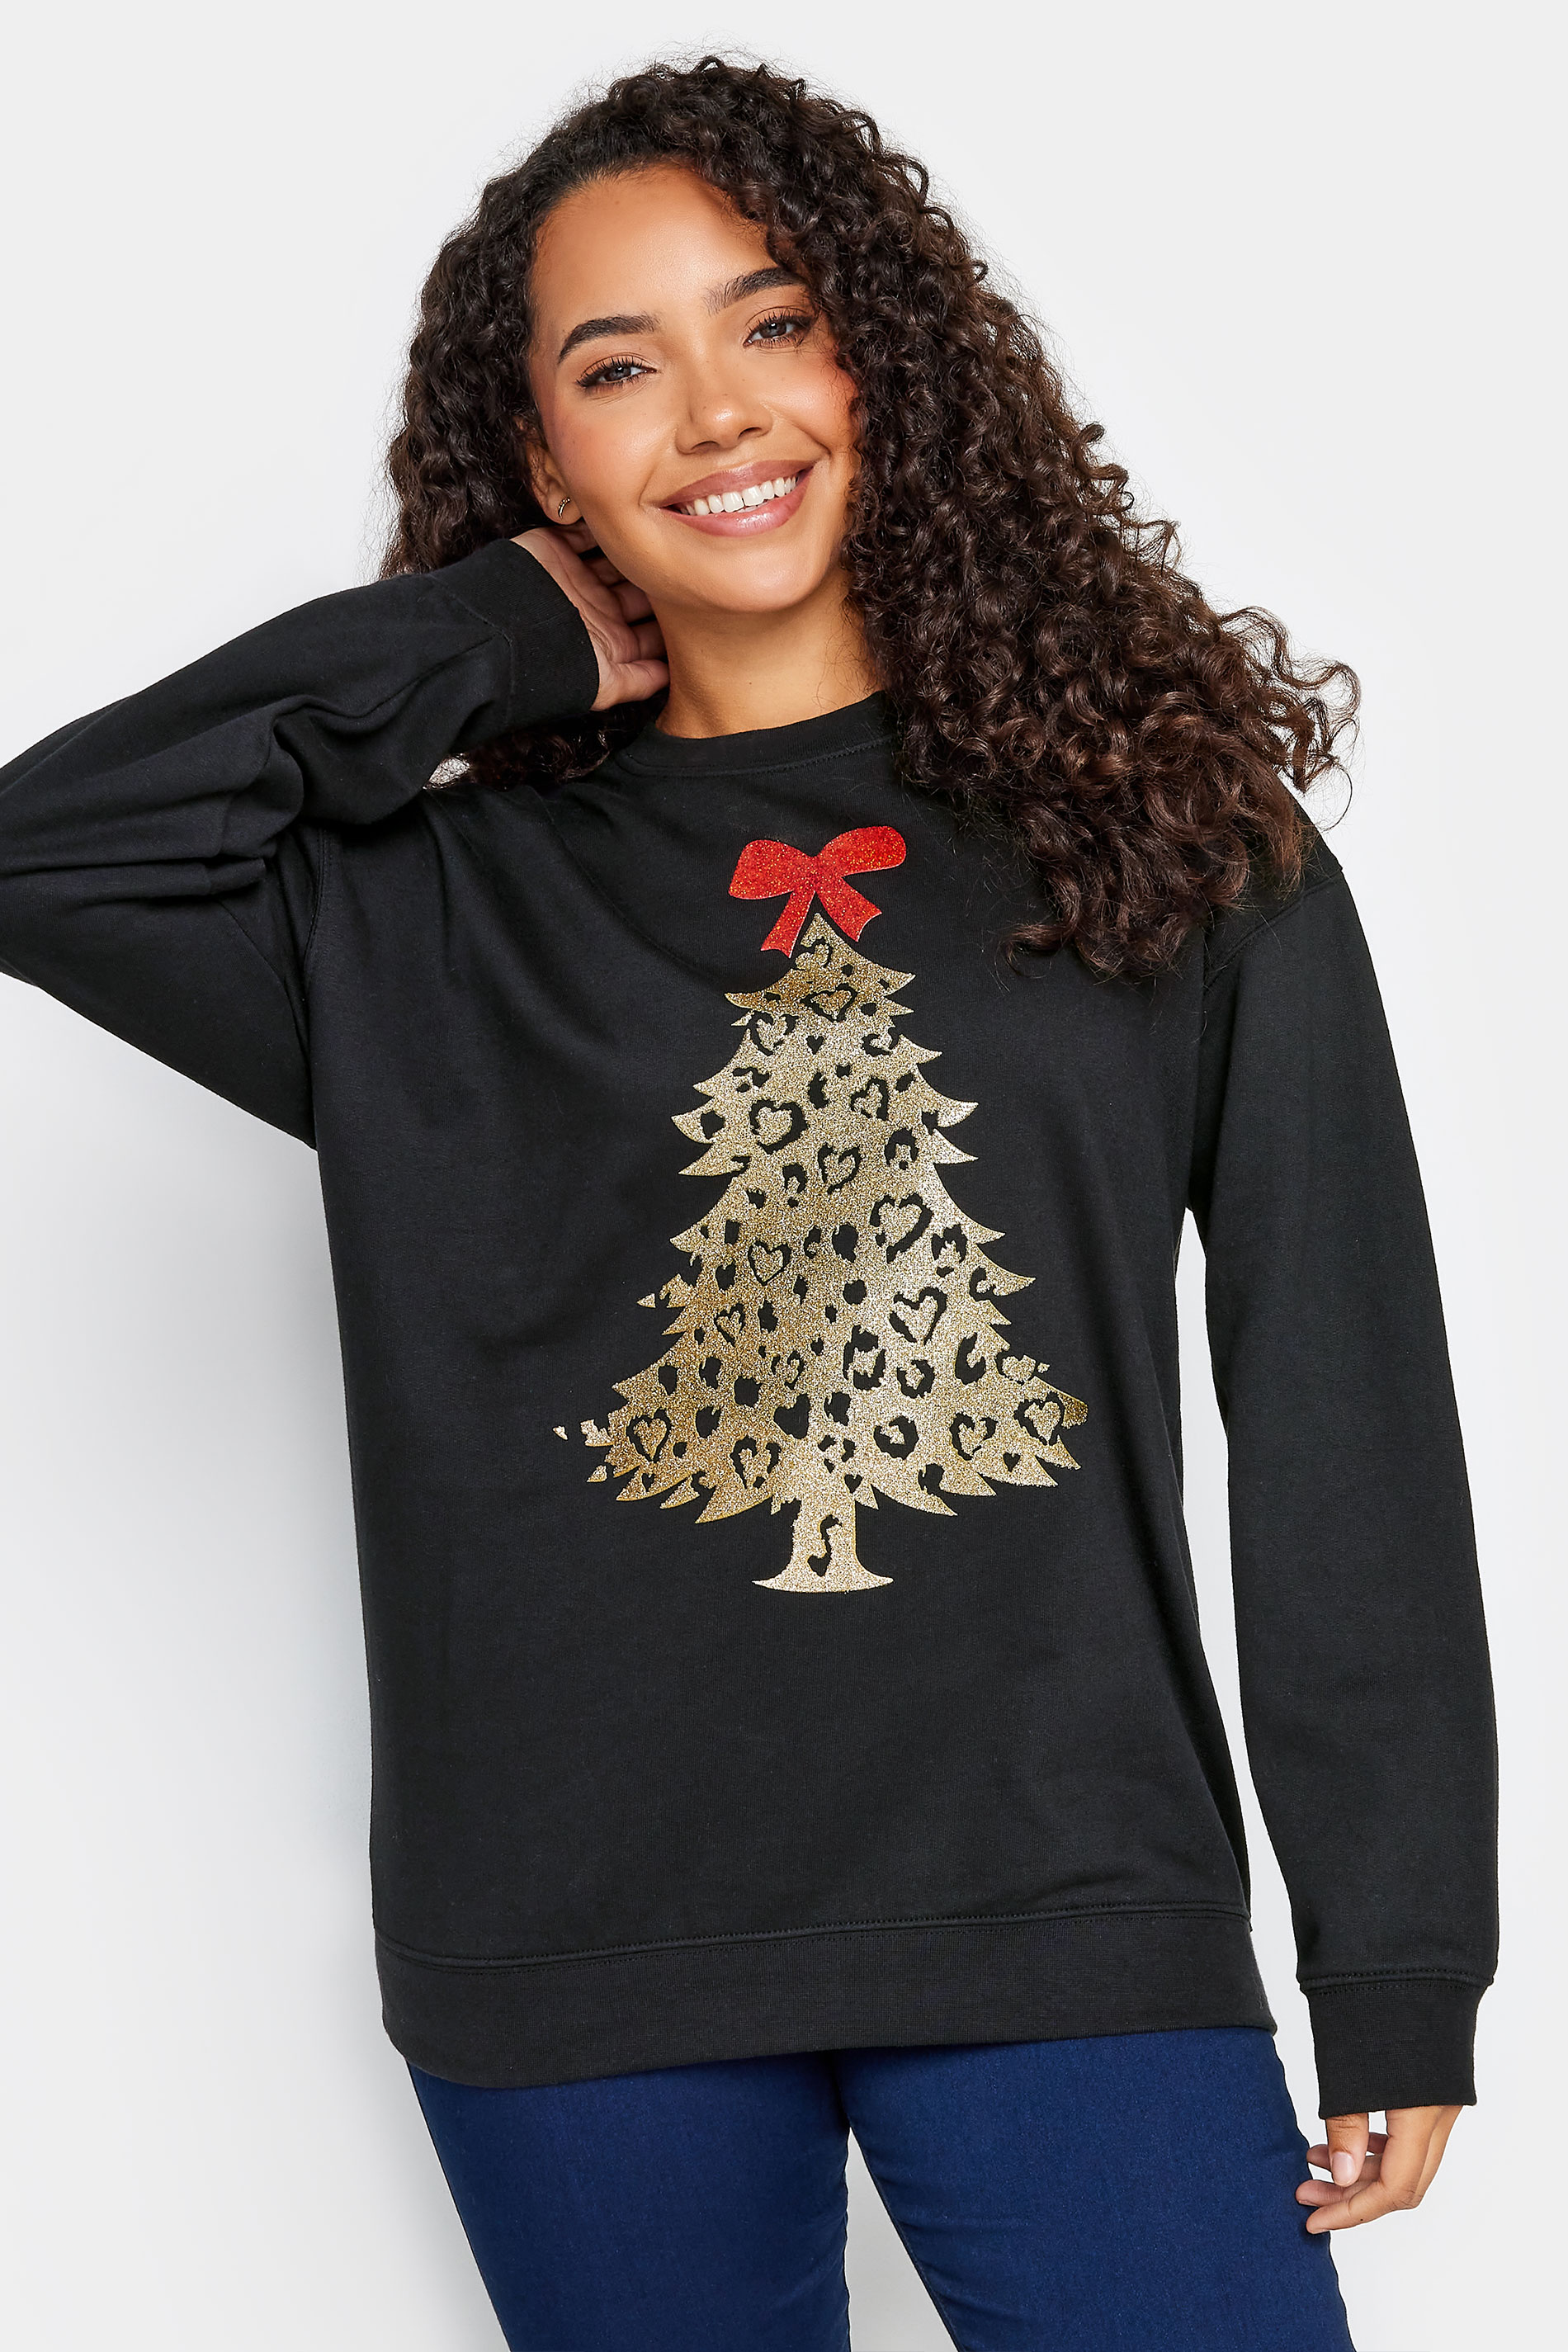 M&Co Black & Gold Christmas Tree Sweatshirt | M&Co